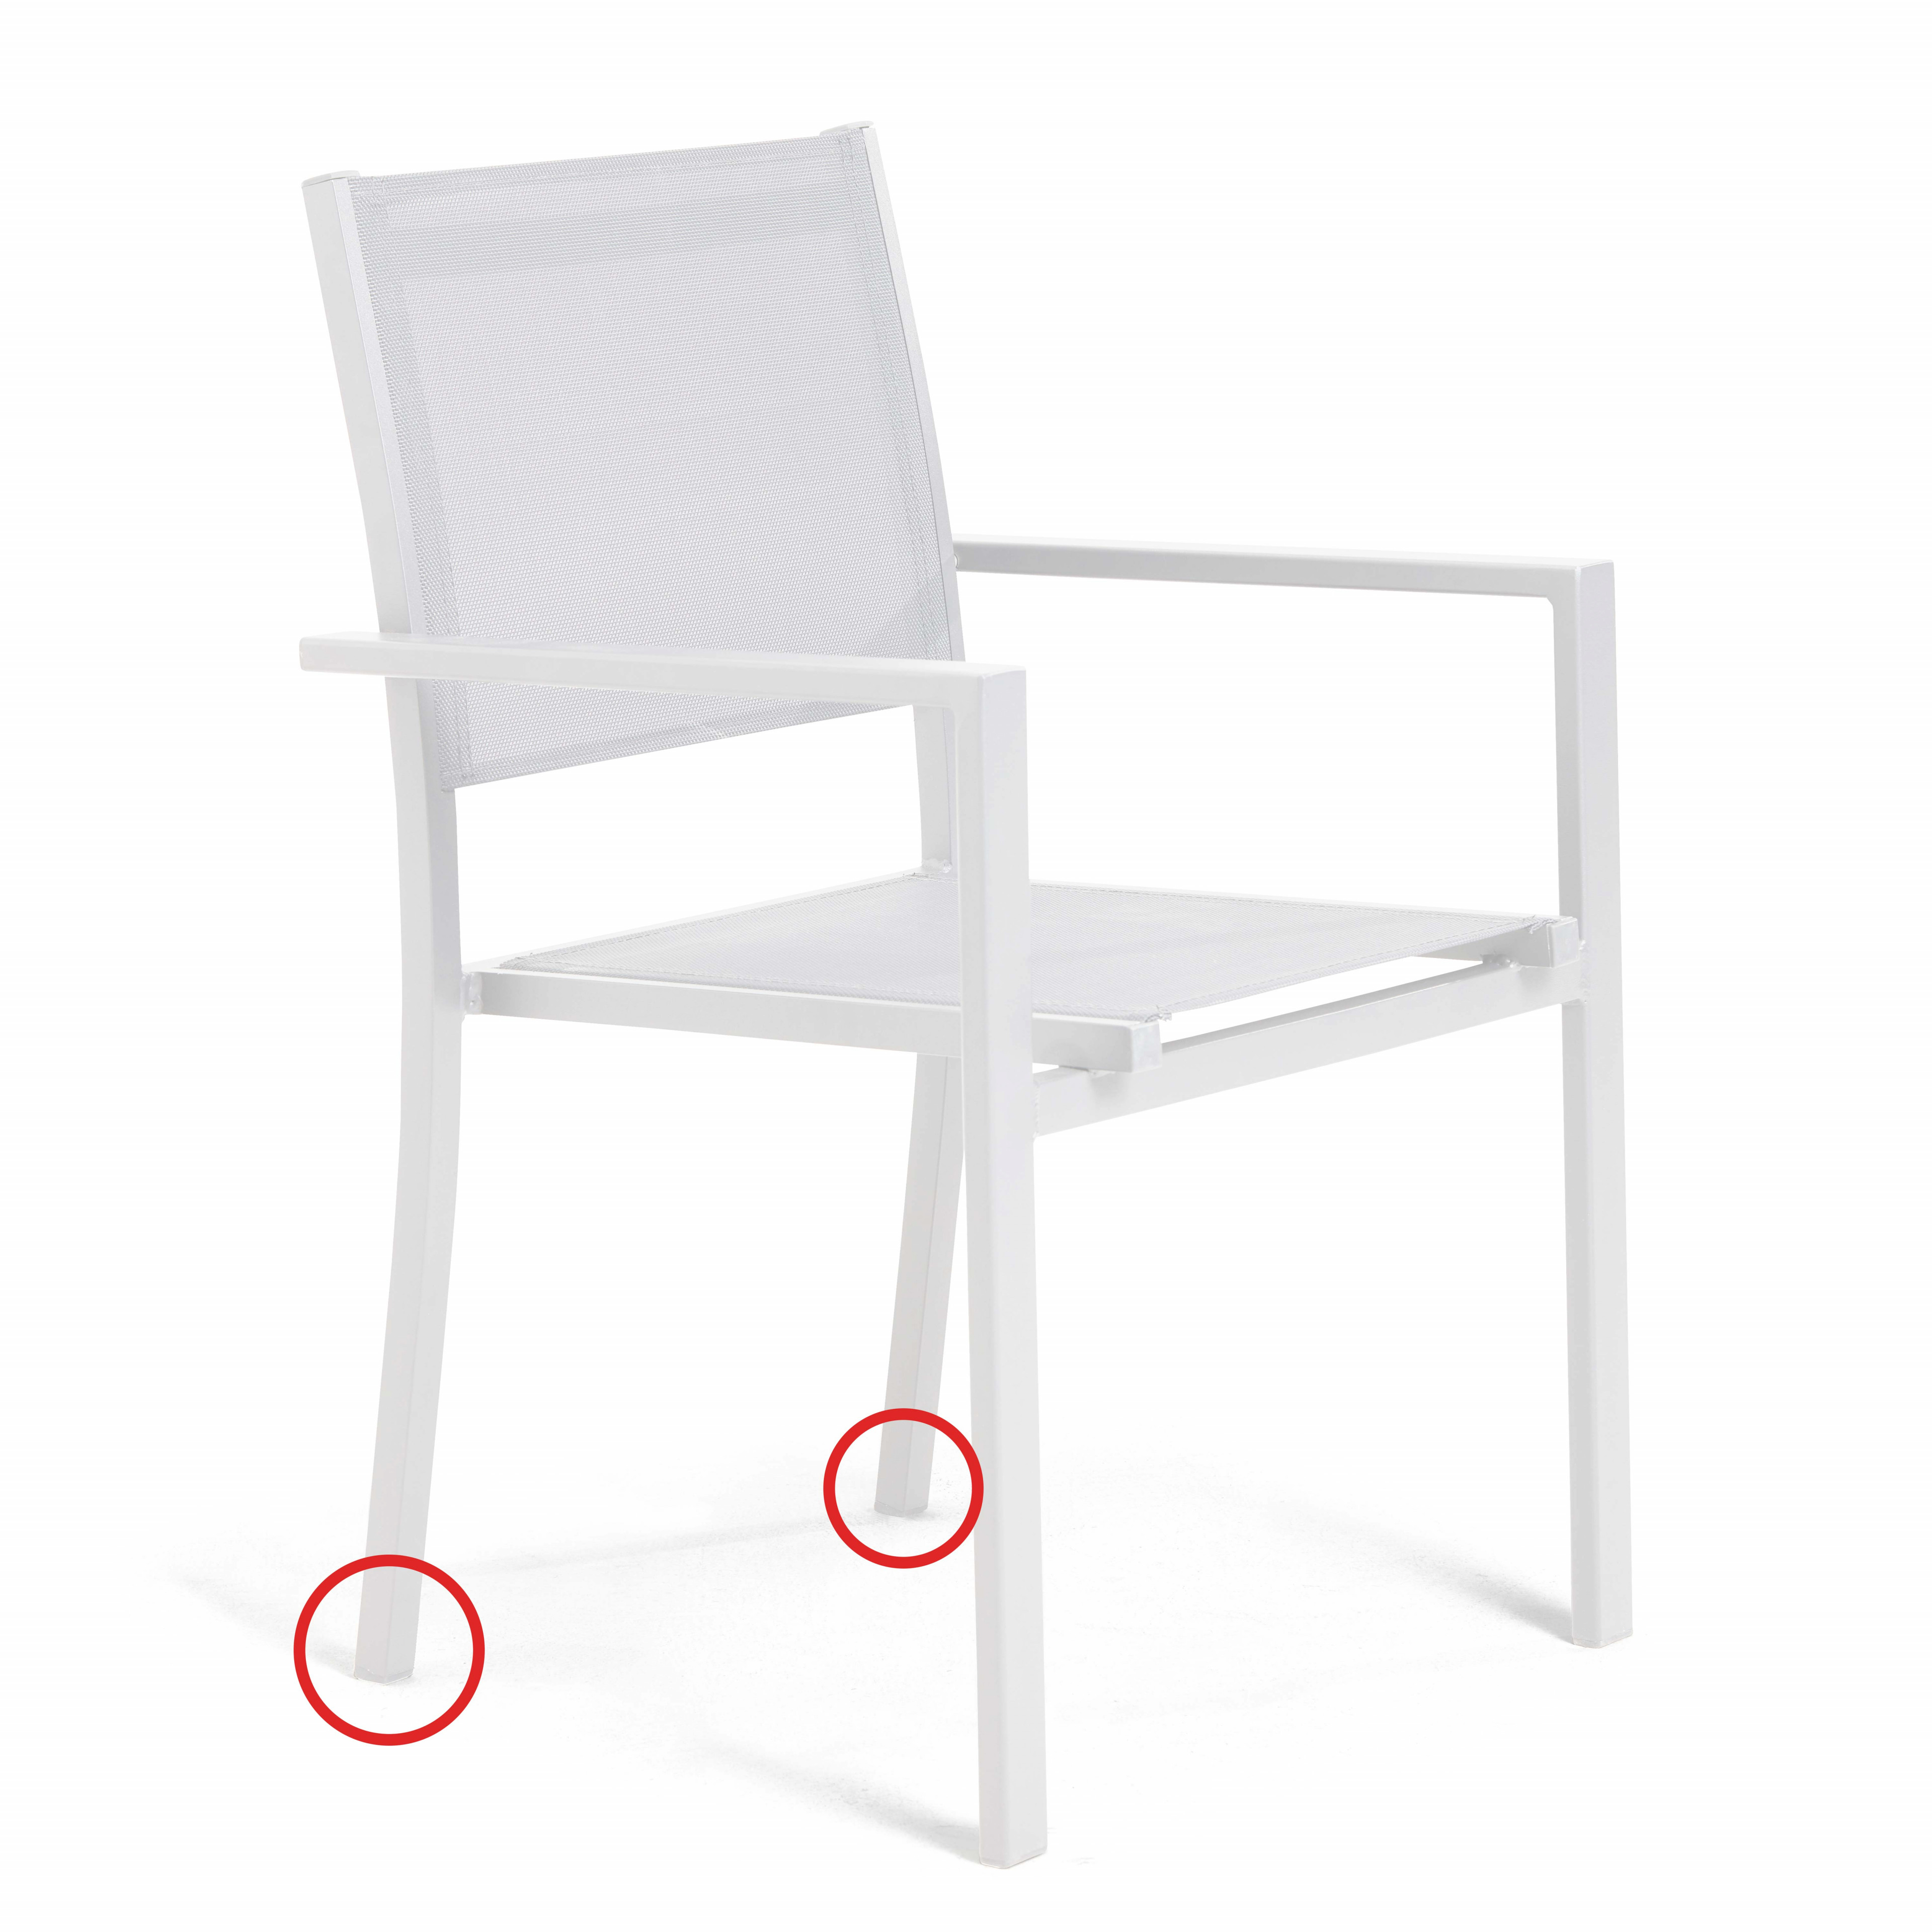 Blanc Protège les pieds des rayures Anwangda Lot de 16 embouts de protection pour pieds de chaise dextérieur Durable et antidérapant 